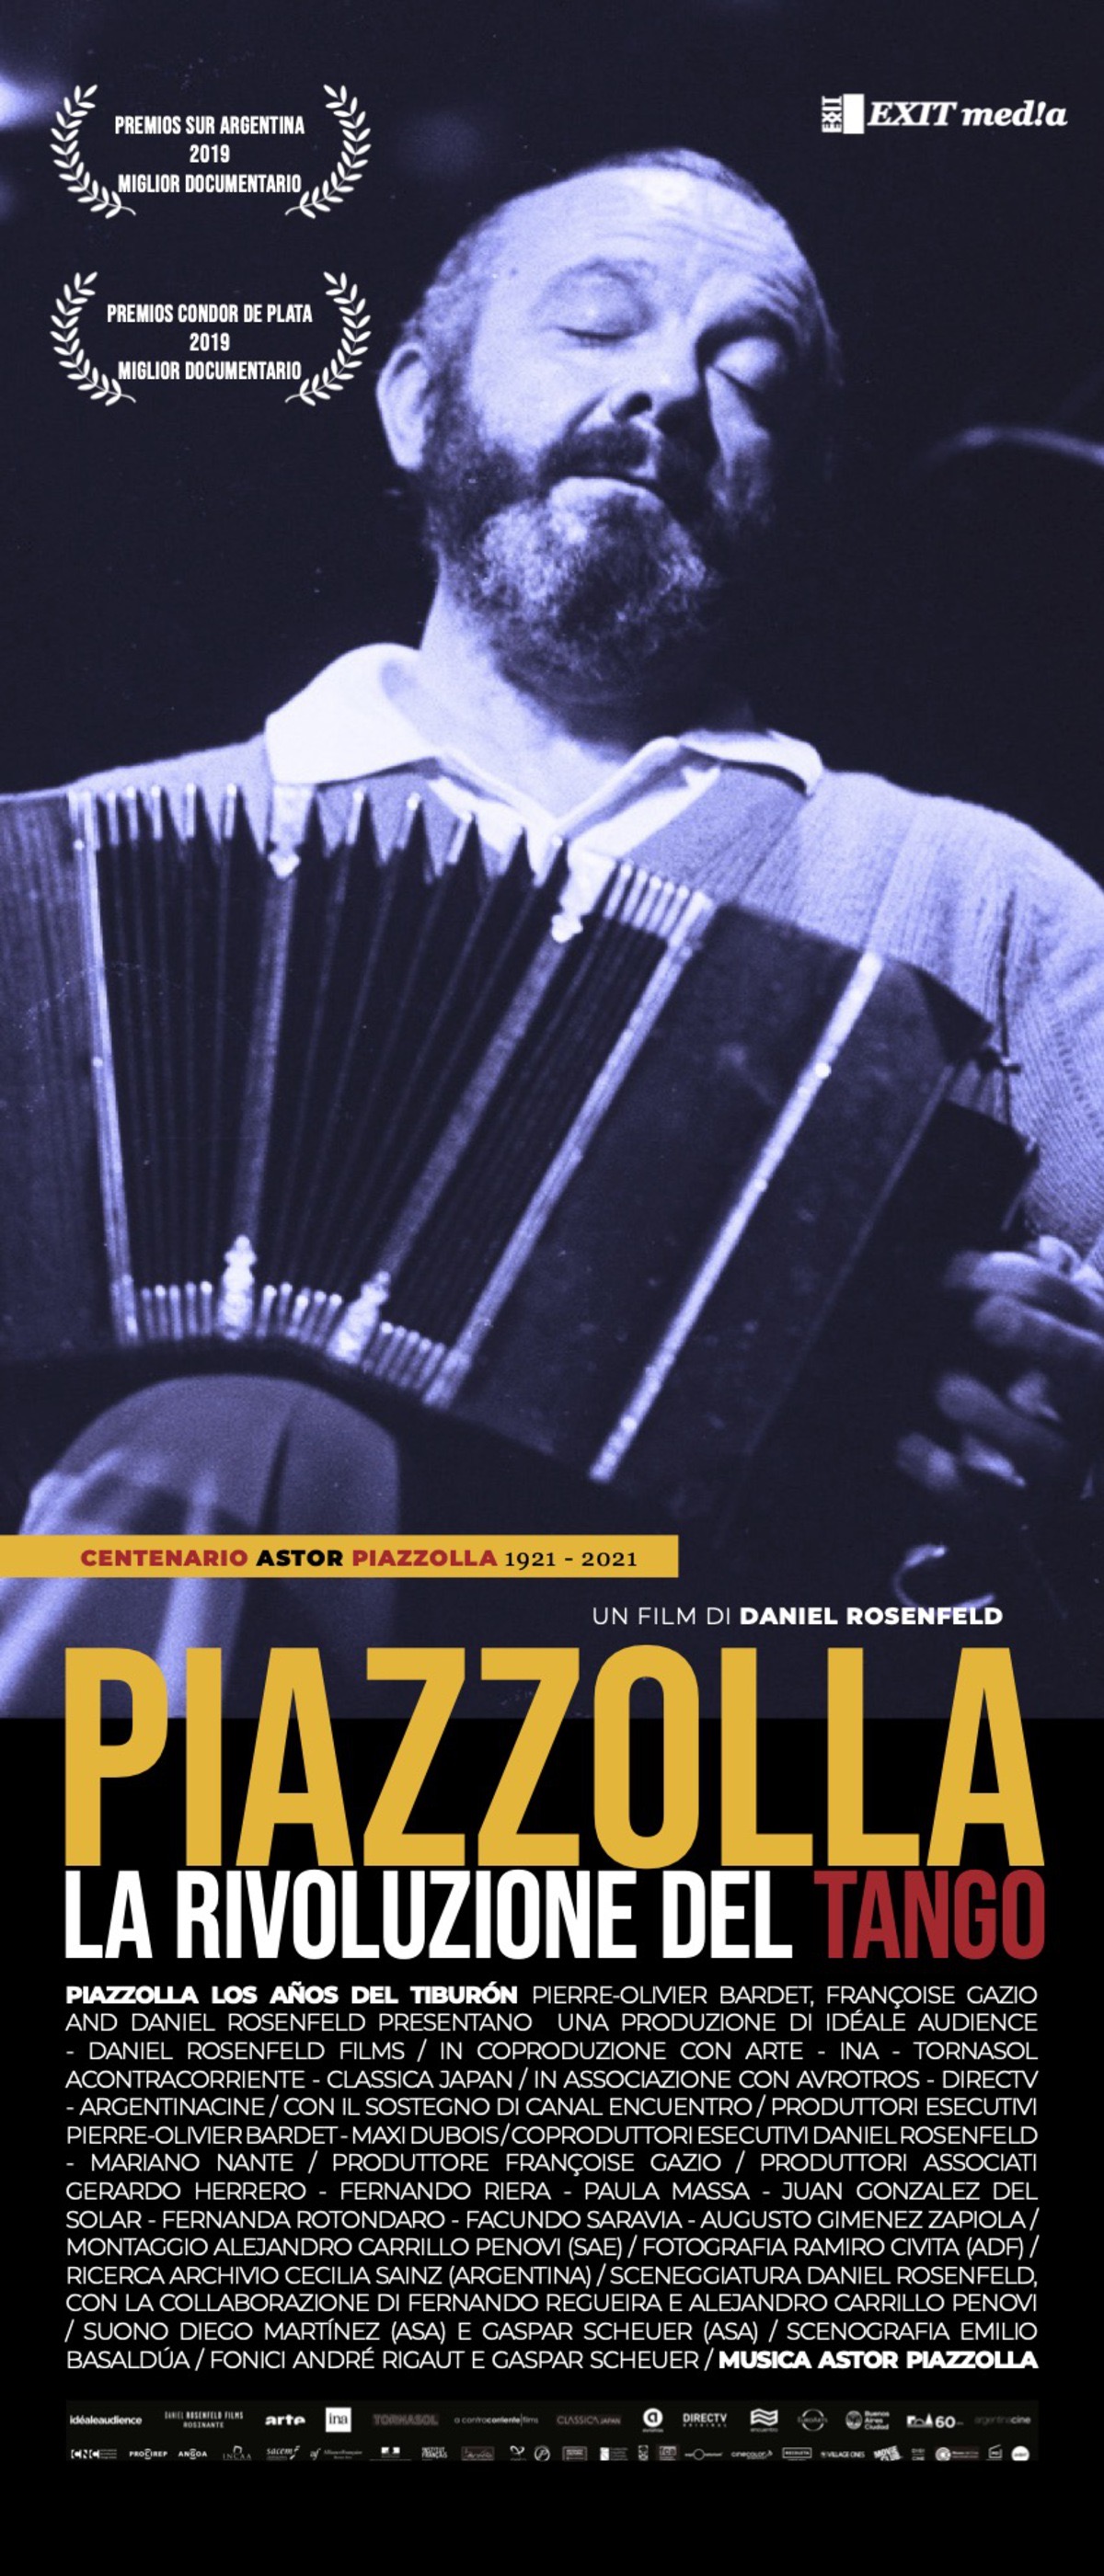 Piazzolla, la rivoluzione del tango